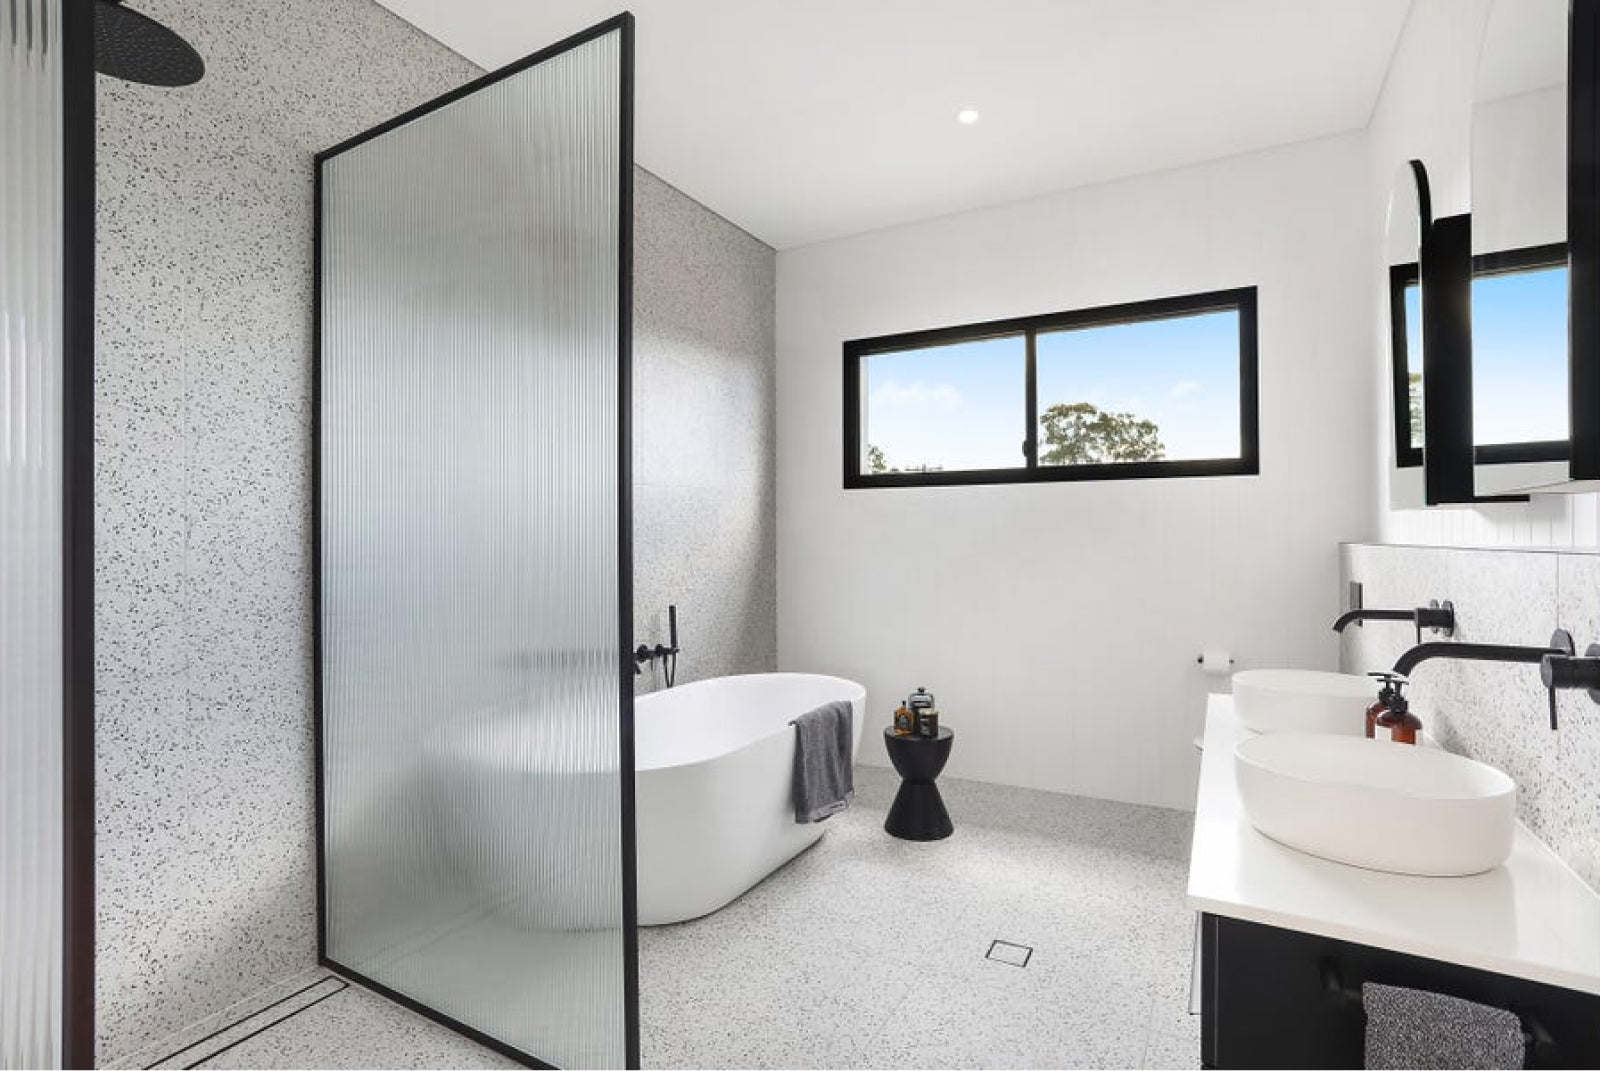 Top 10 Terrazzo Bathroom Designs From Properties Over $2 Million